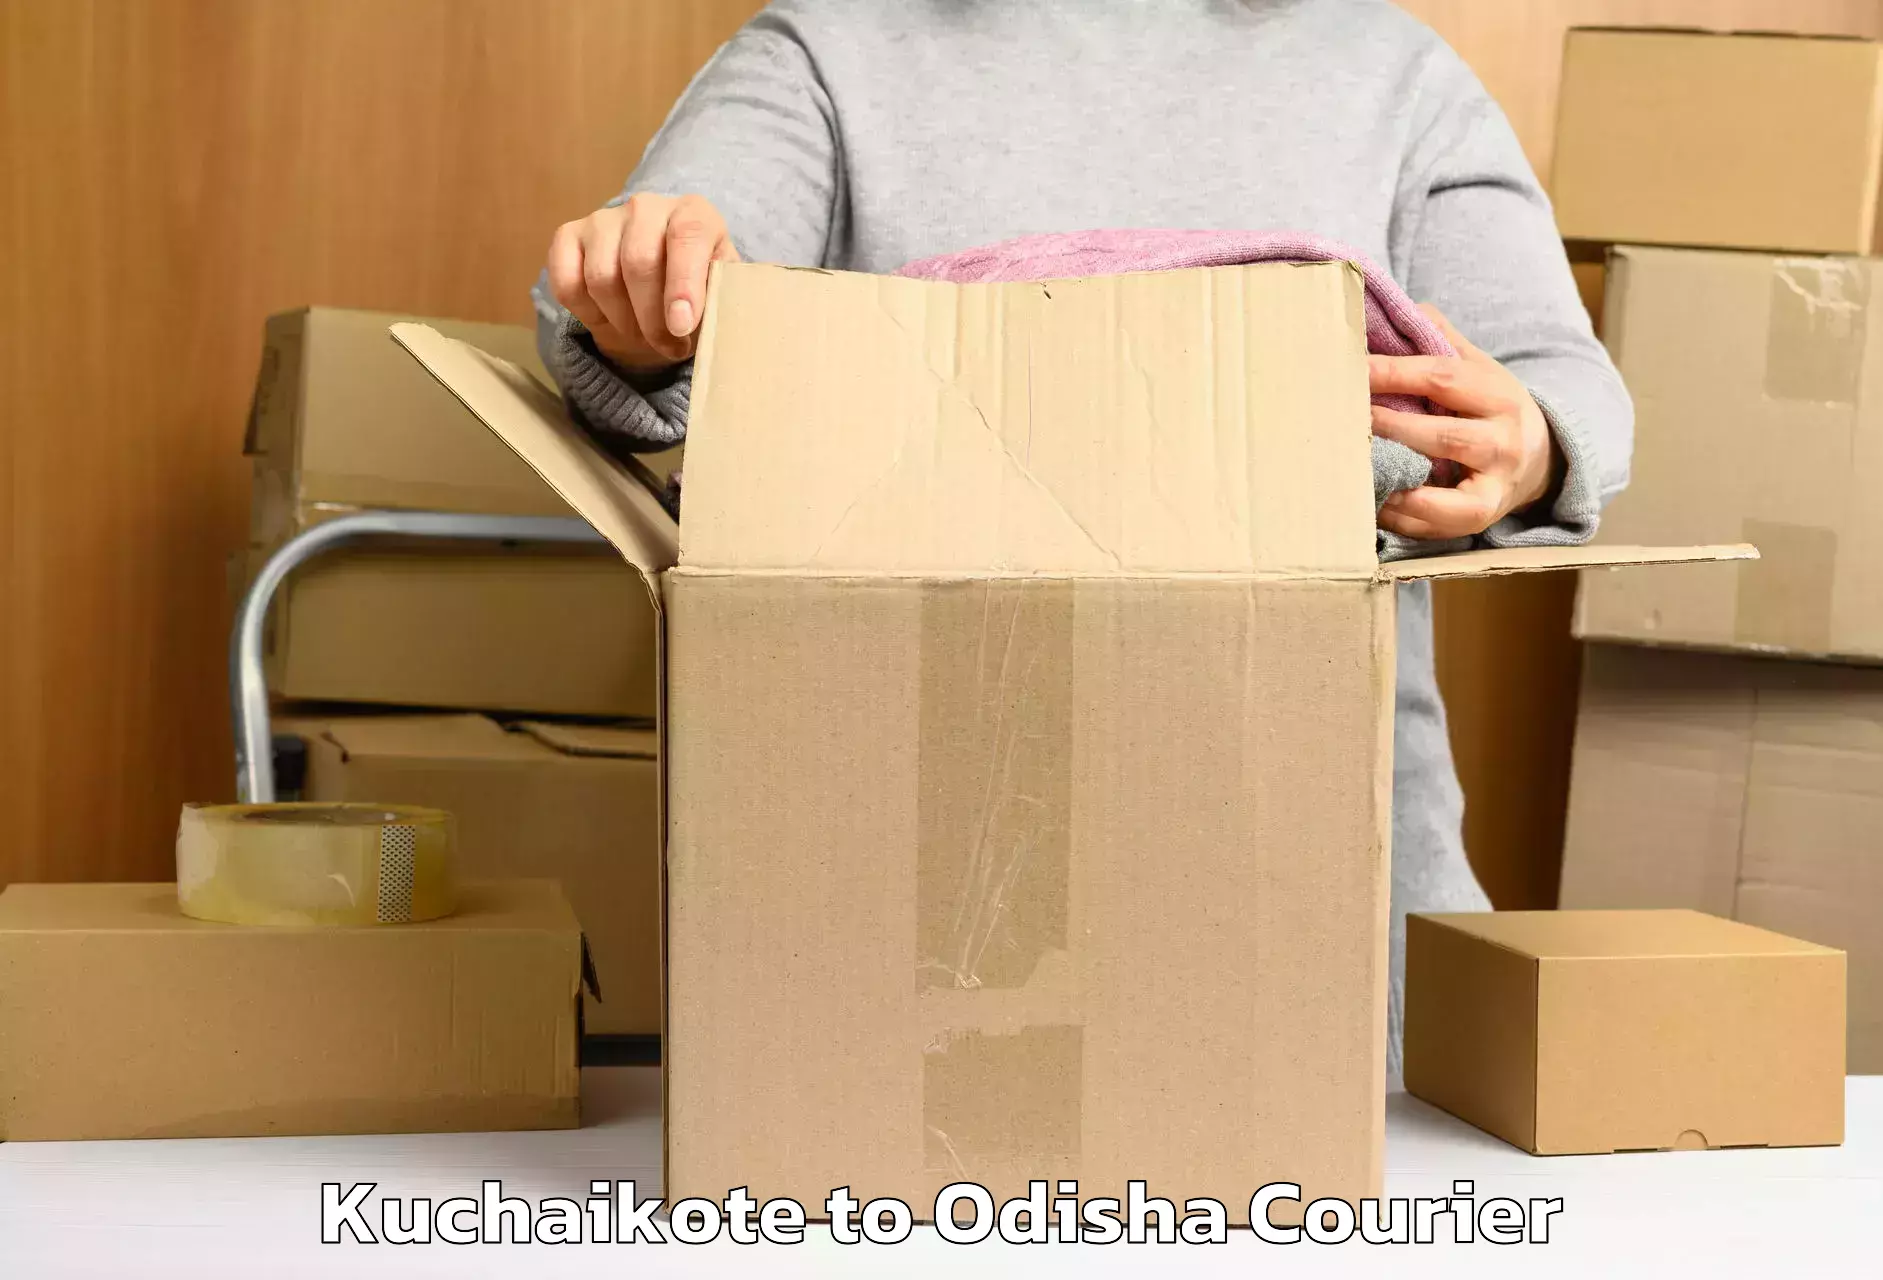 Quick luggage shipment Kuchaikote to Chikiti